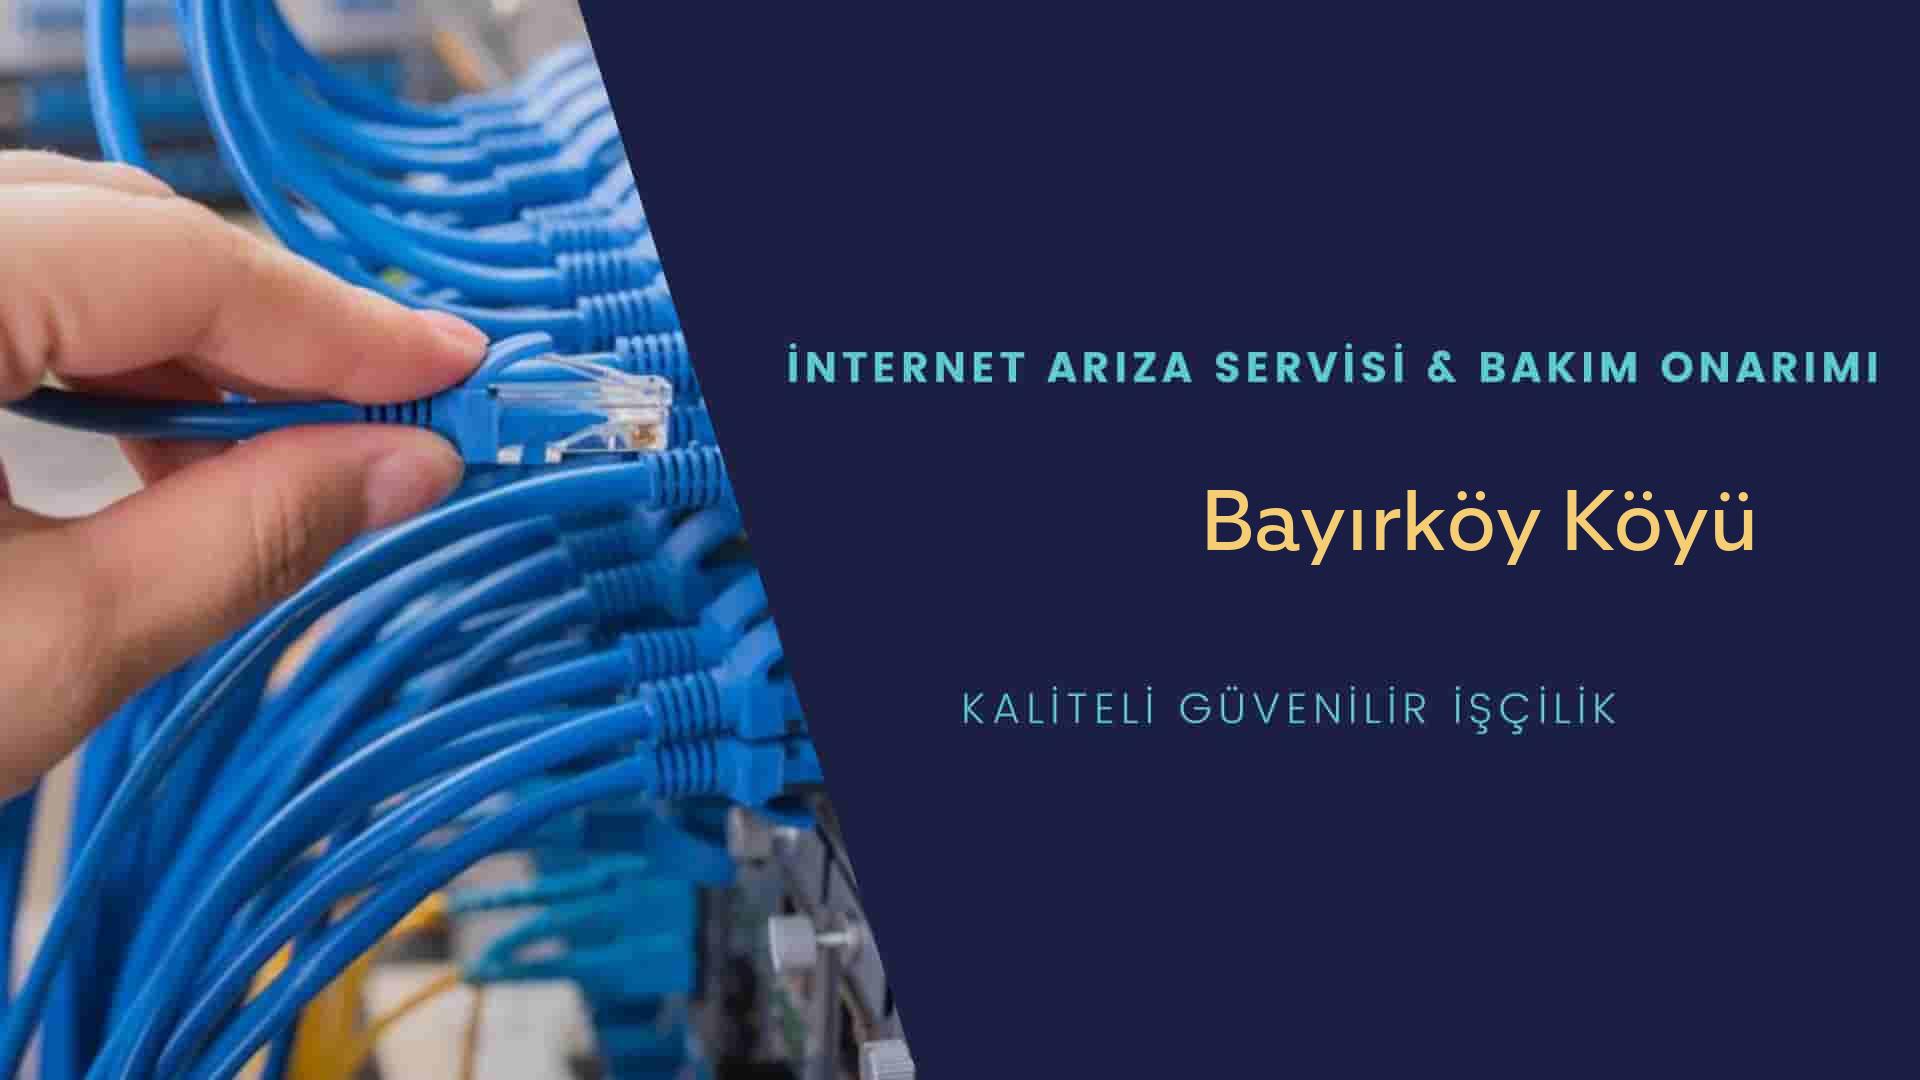 Bayırköy Köyü internet kablosu çekimi yapan yerler veya elektrikçiler mi? arıyorsunuz doğru yerdesiniz o zaman sizlere 7/24 yardımcı olacak profesyonel ustalarımız bir telefon kadar yakındır size.